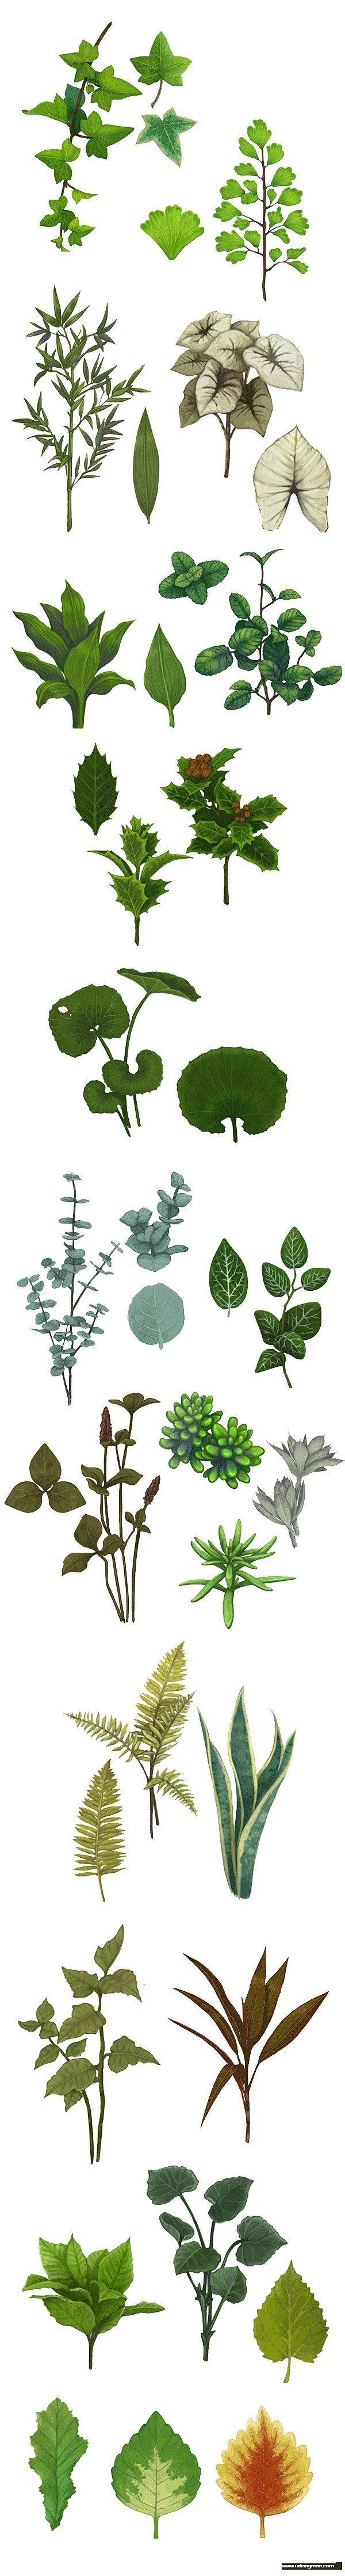 各种植物的绿叶素材~皆为PNG版本。在做...